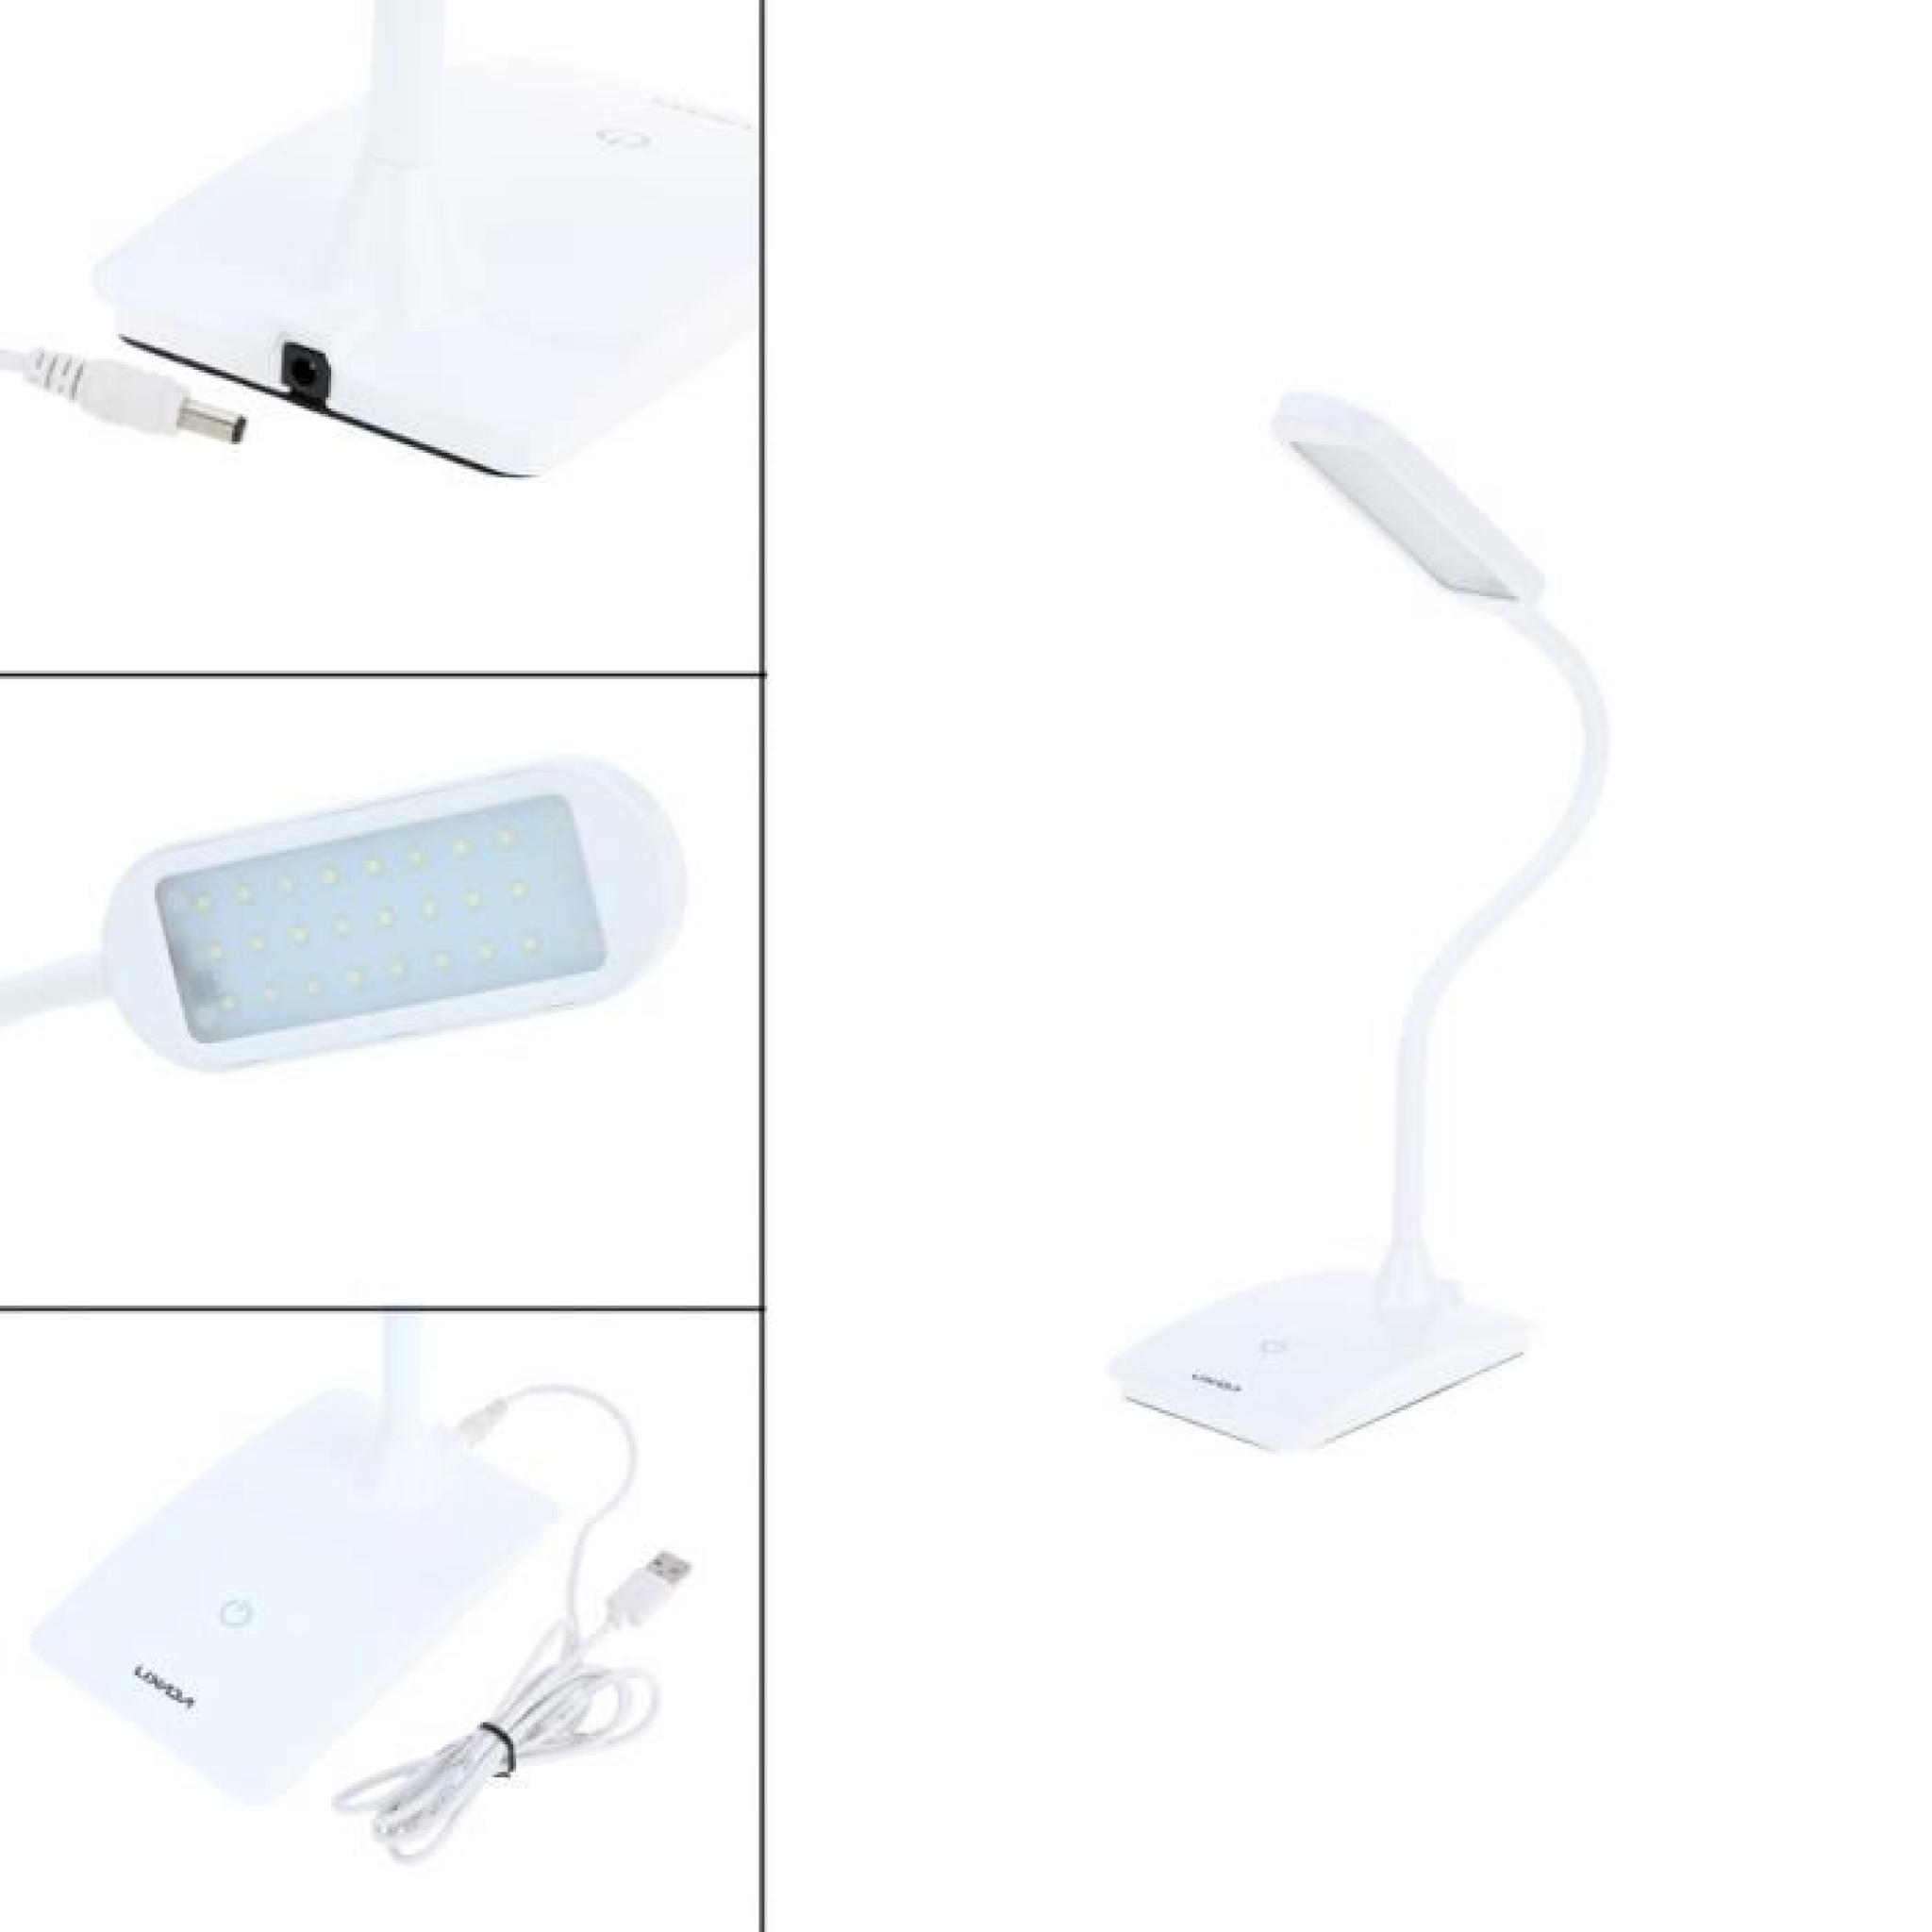  Lixada 6W rechargeable Commutateur tactile Lampe LED de lecture Protéger l'oeil luminosité réglable lampe de table pliable blanc pas cher